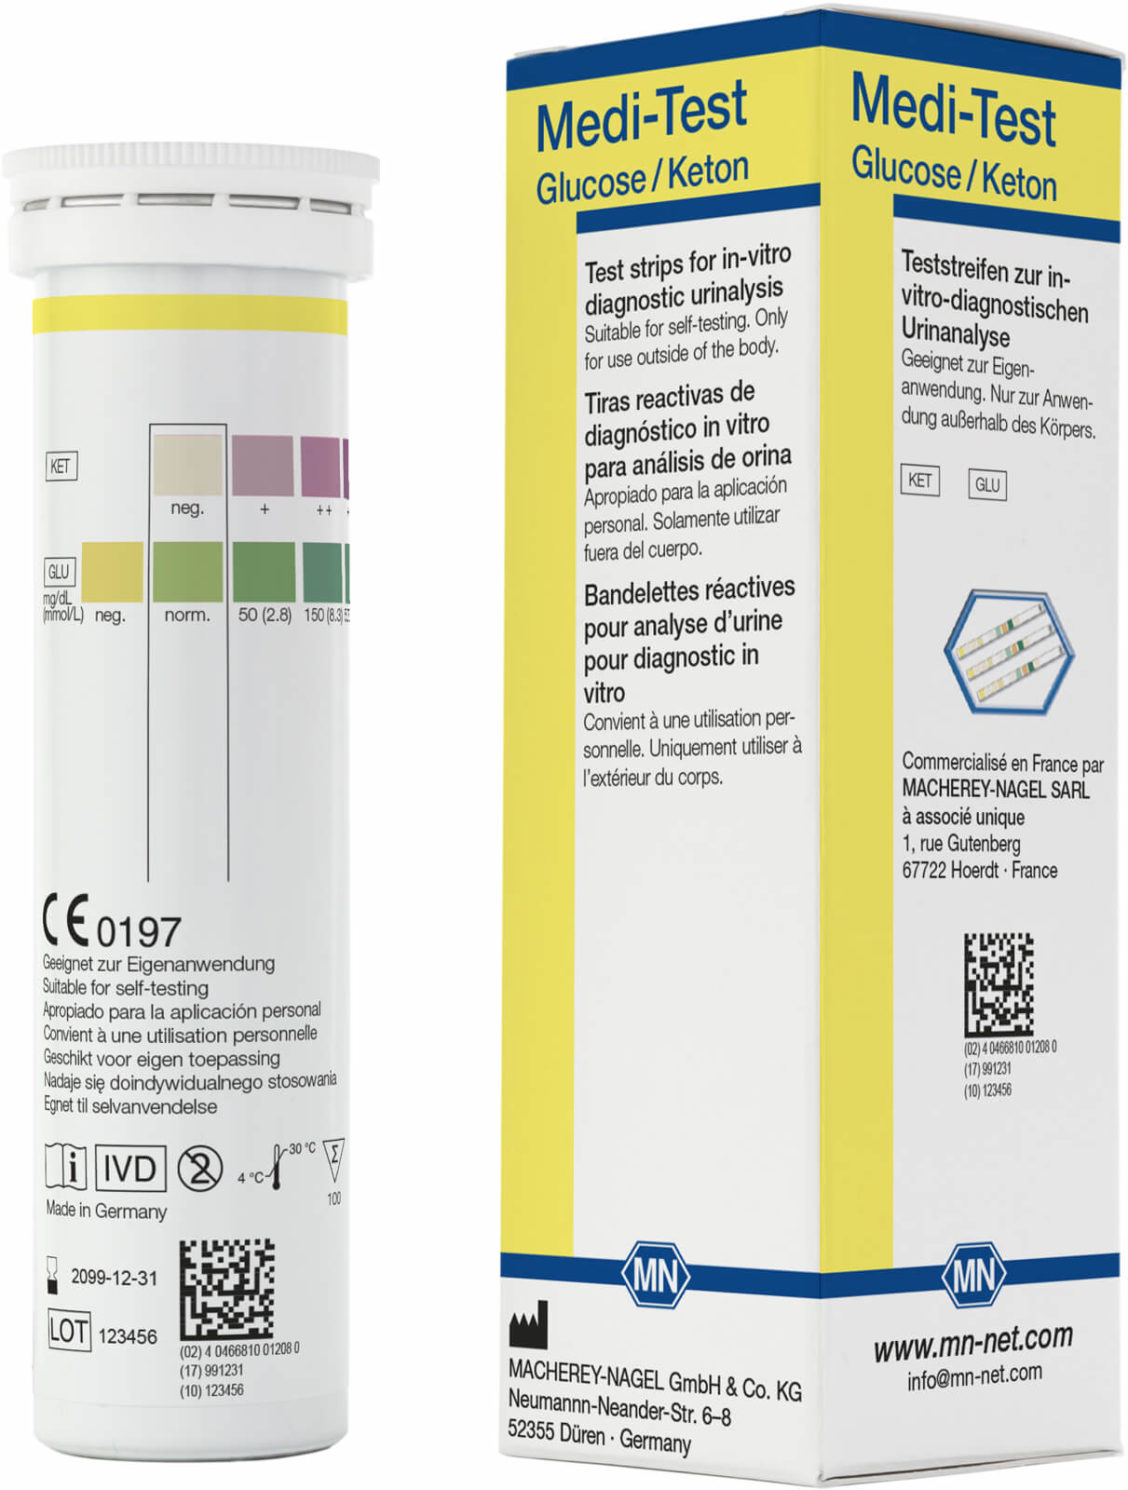 M&N 93020 Medi-Test glukose og keton -100 tester